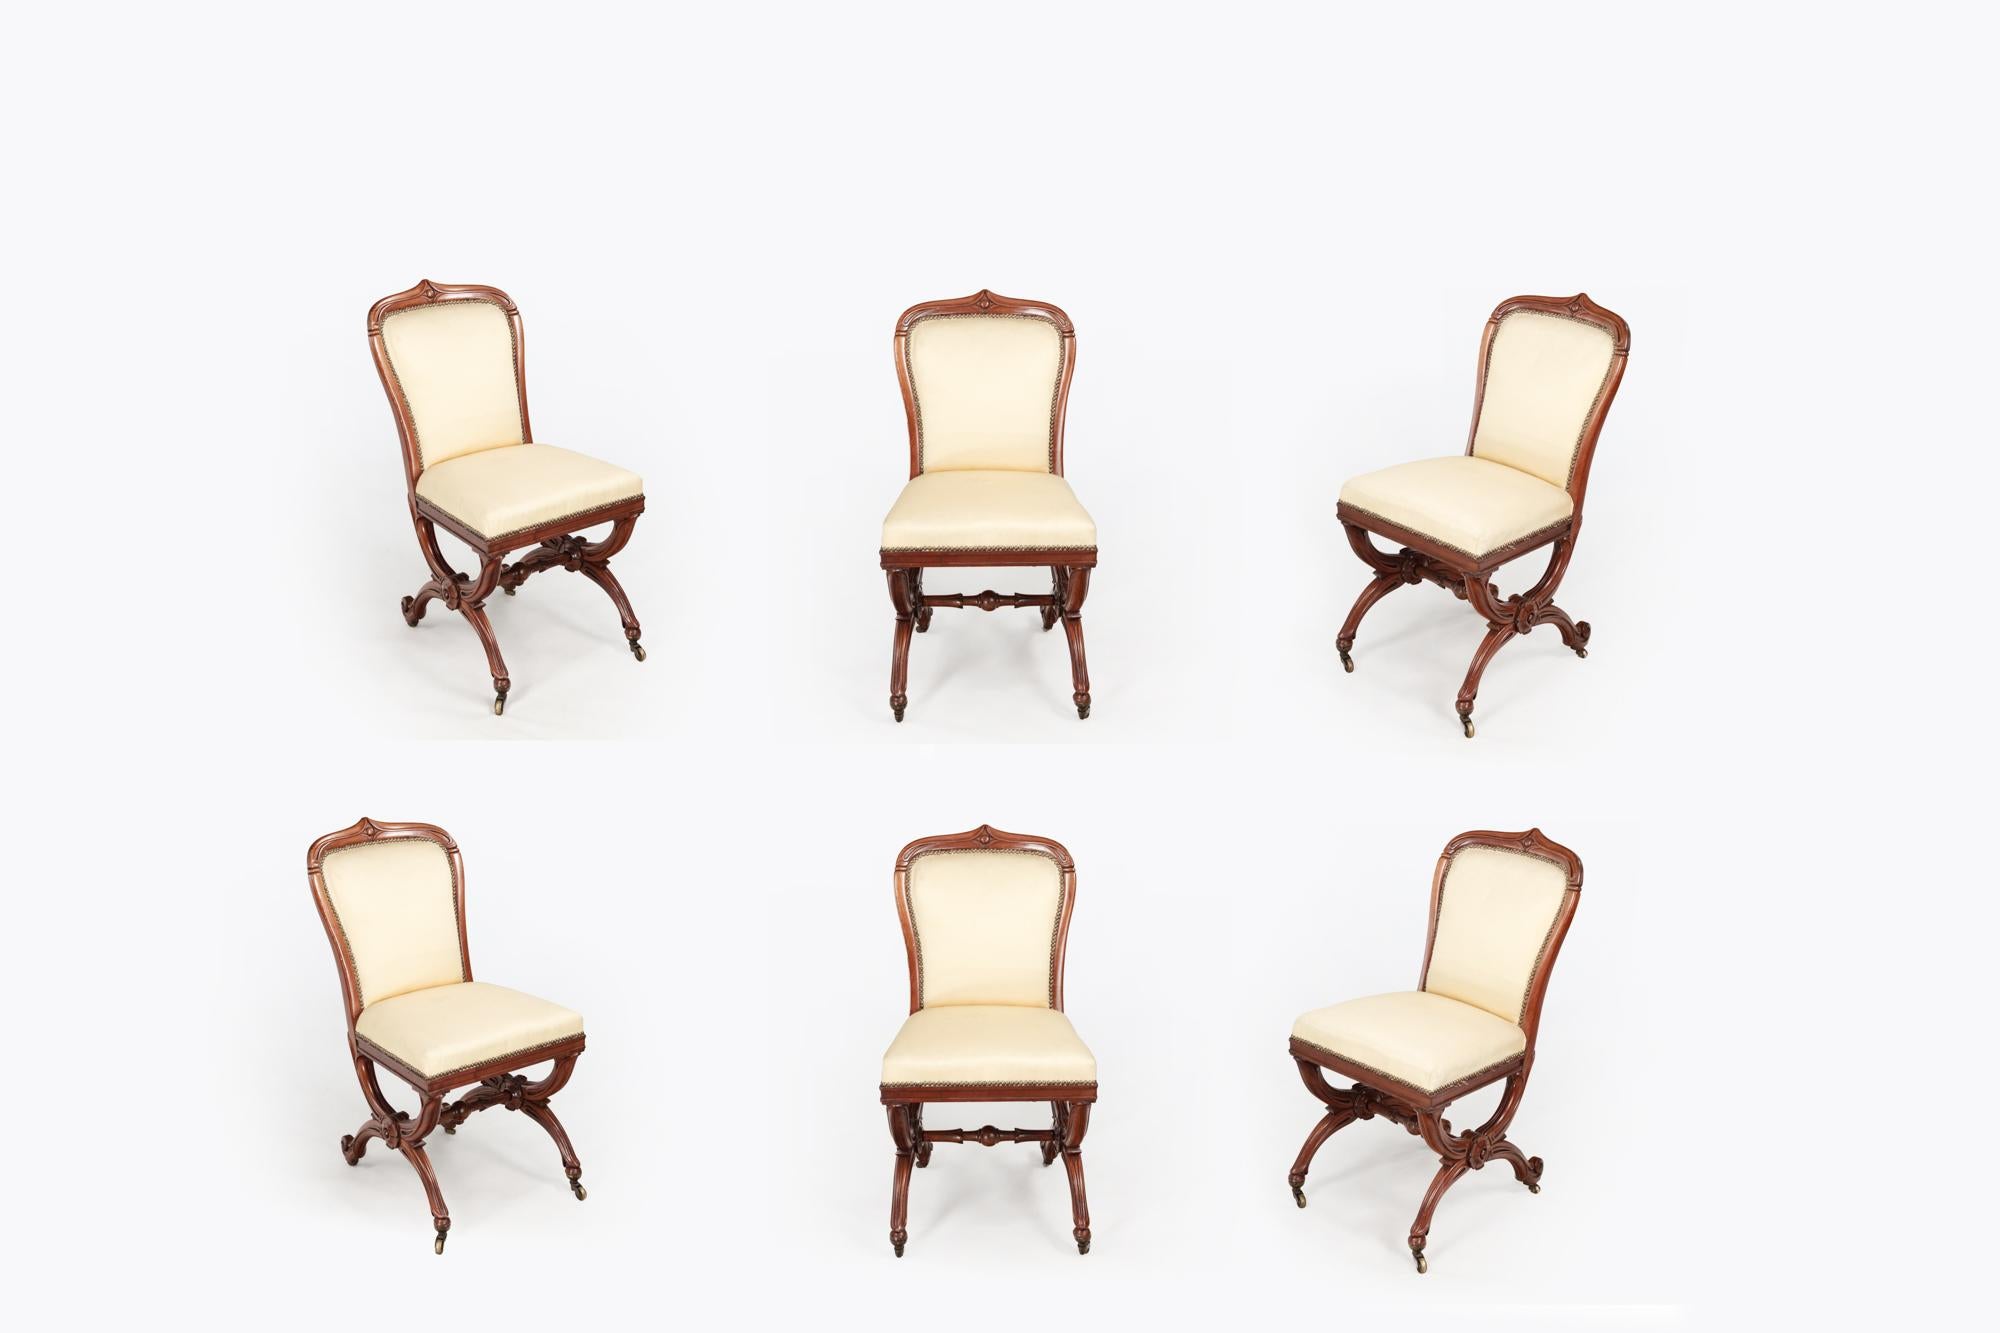 Ensemble de six chaises de salle à manger du 19e siècle avec des cadres en acajou en forme de X et des dossiers paddés. Les pieds en X sont ornés d'une rosace centrale sculptée et sont reliés par des entretoises moulurées. Ils se terminent par des